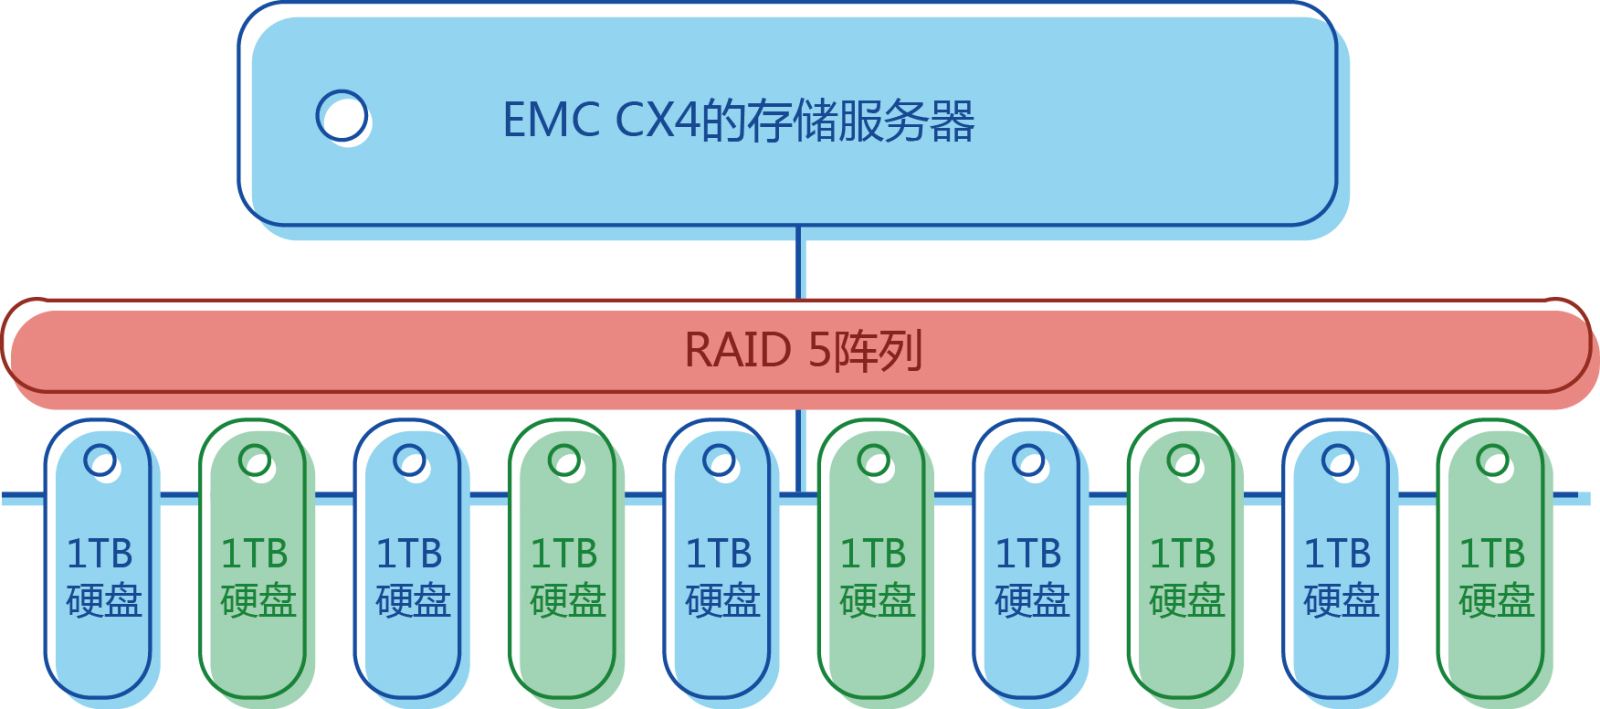 EMC CX4-480服务器瘫痪数据恢复成功案例